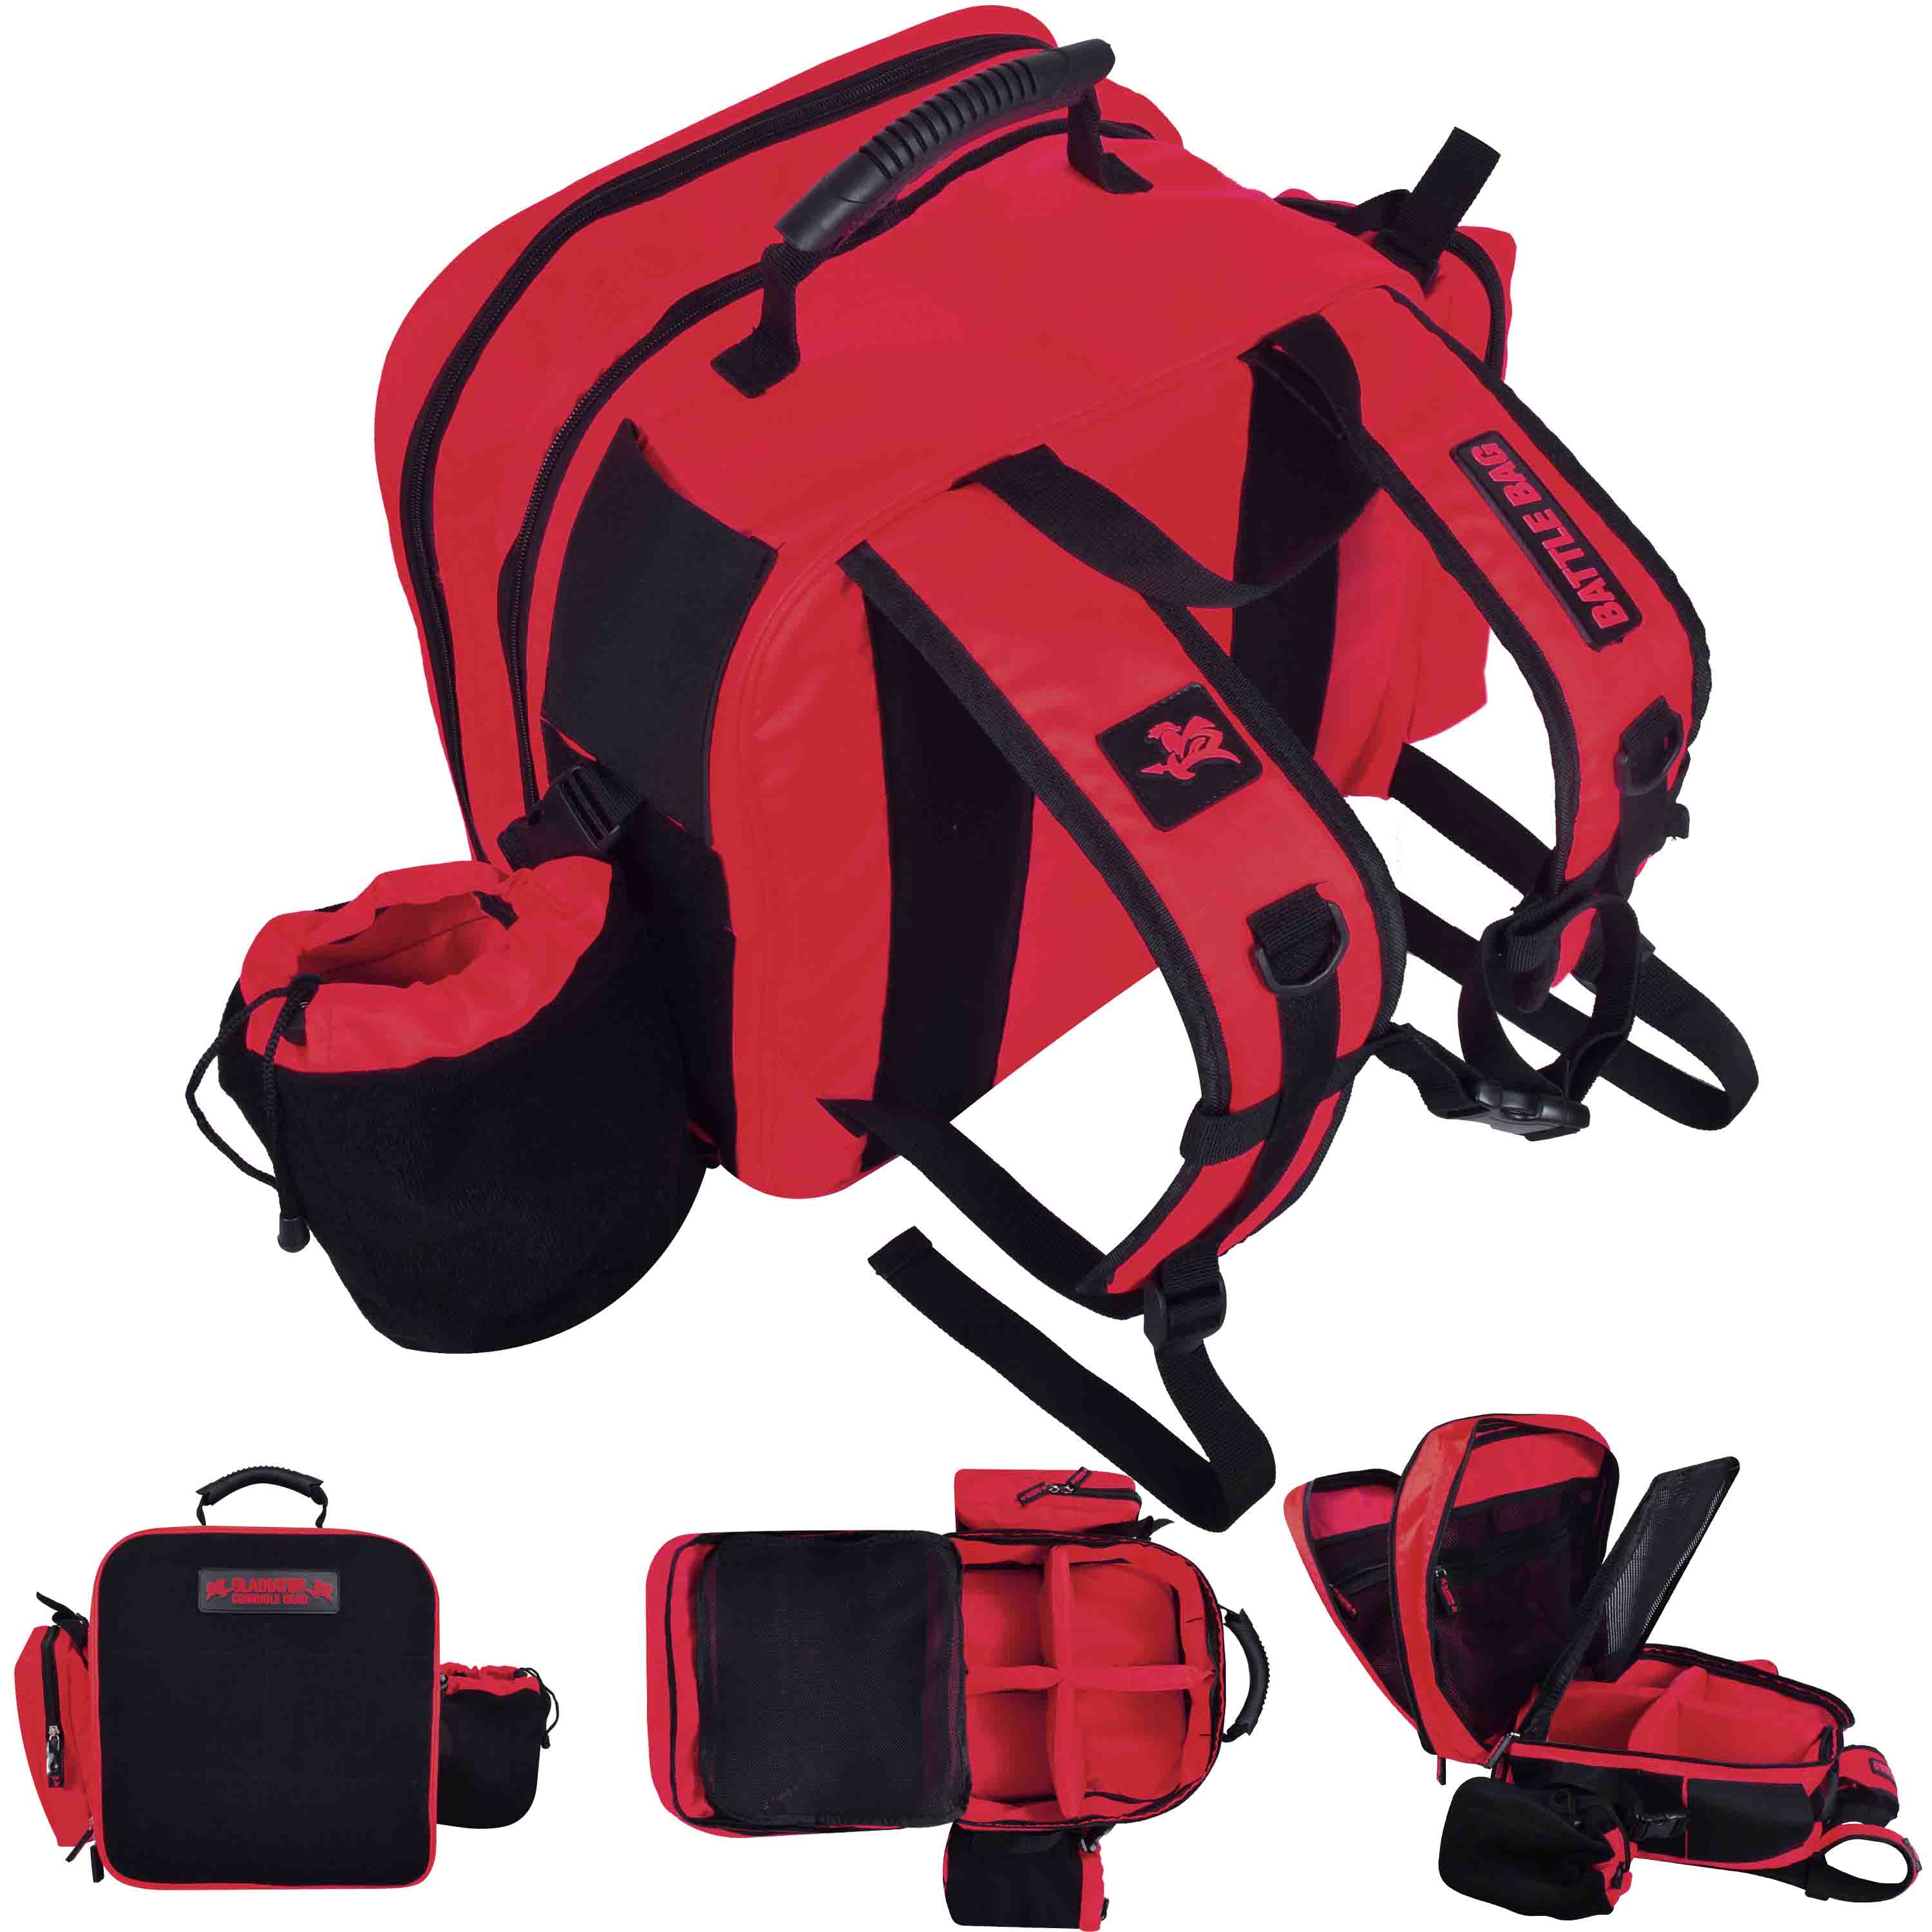 Gladiator Battle Bag Backpack for Bags Red - Gladiator